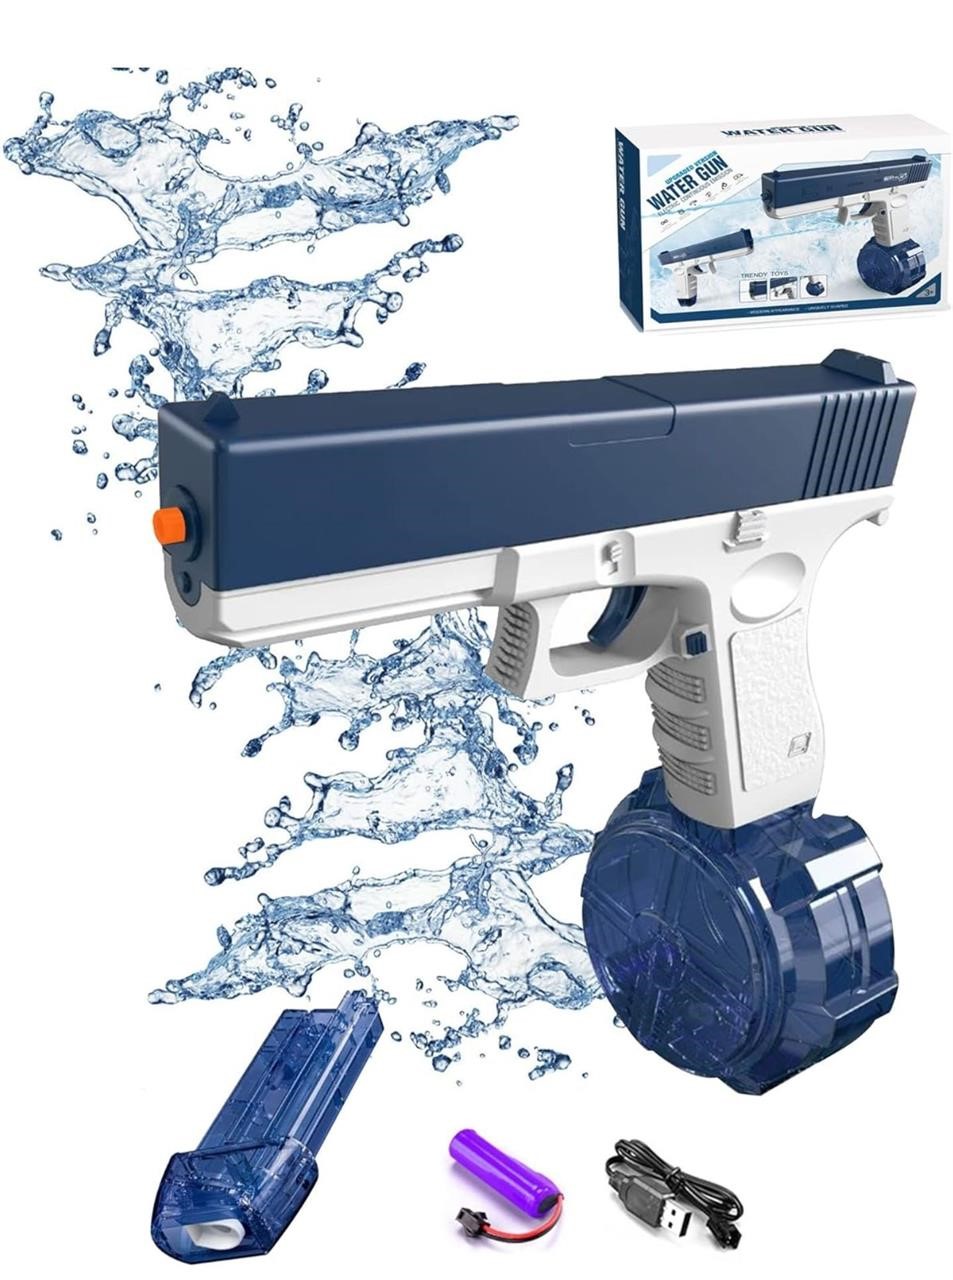 ($28) EWRITN Electric Water Gun for Adul